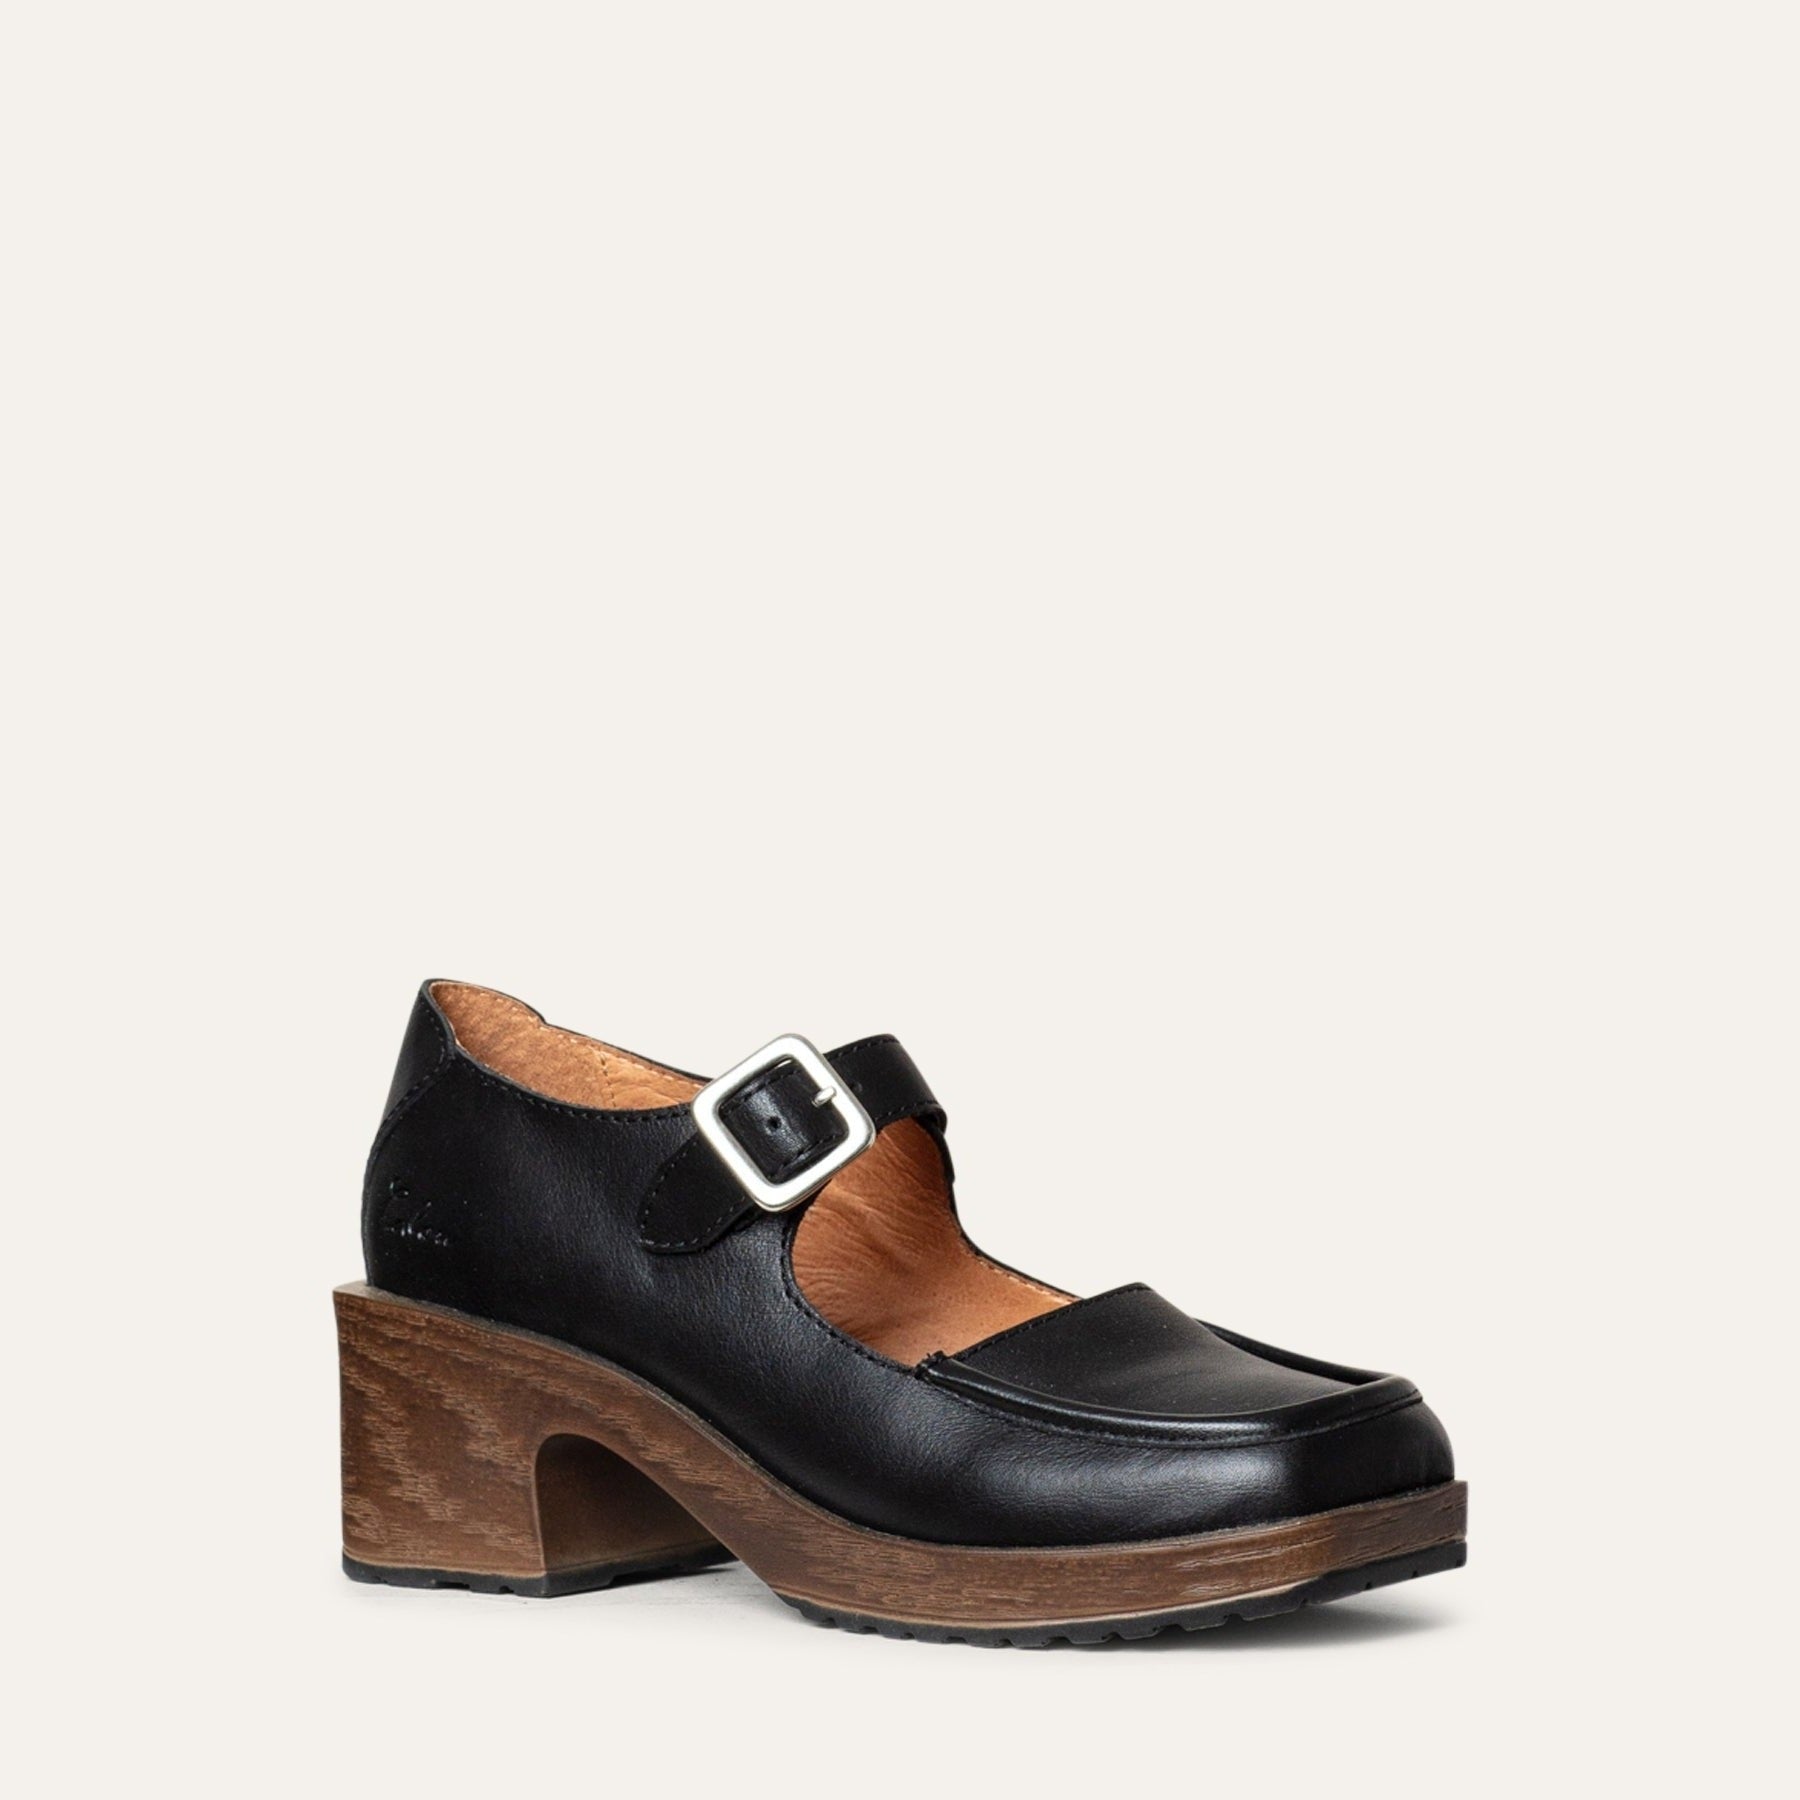 Calou Stockholm | Iwa black leather Mary Jane on block heel